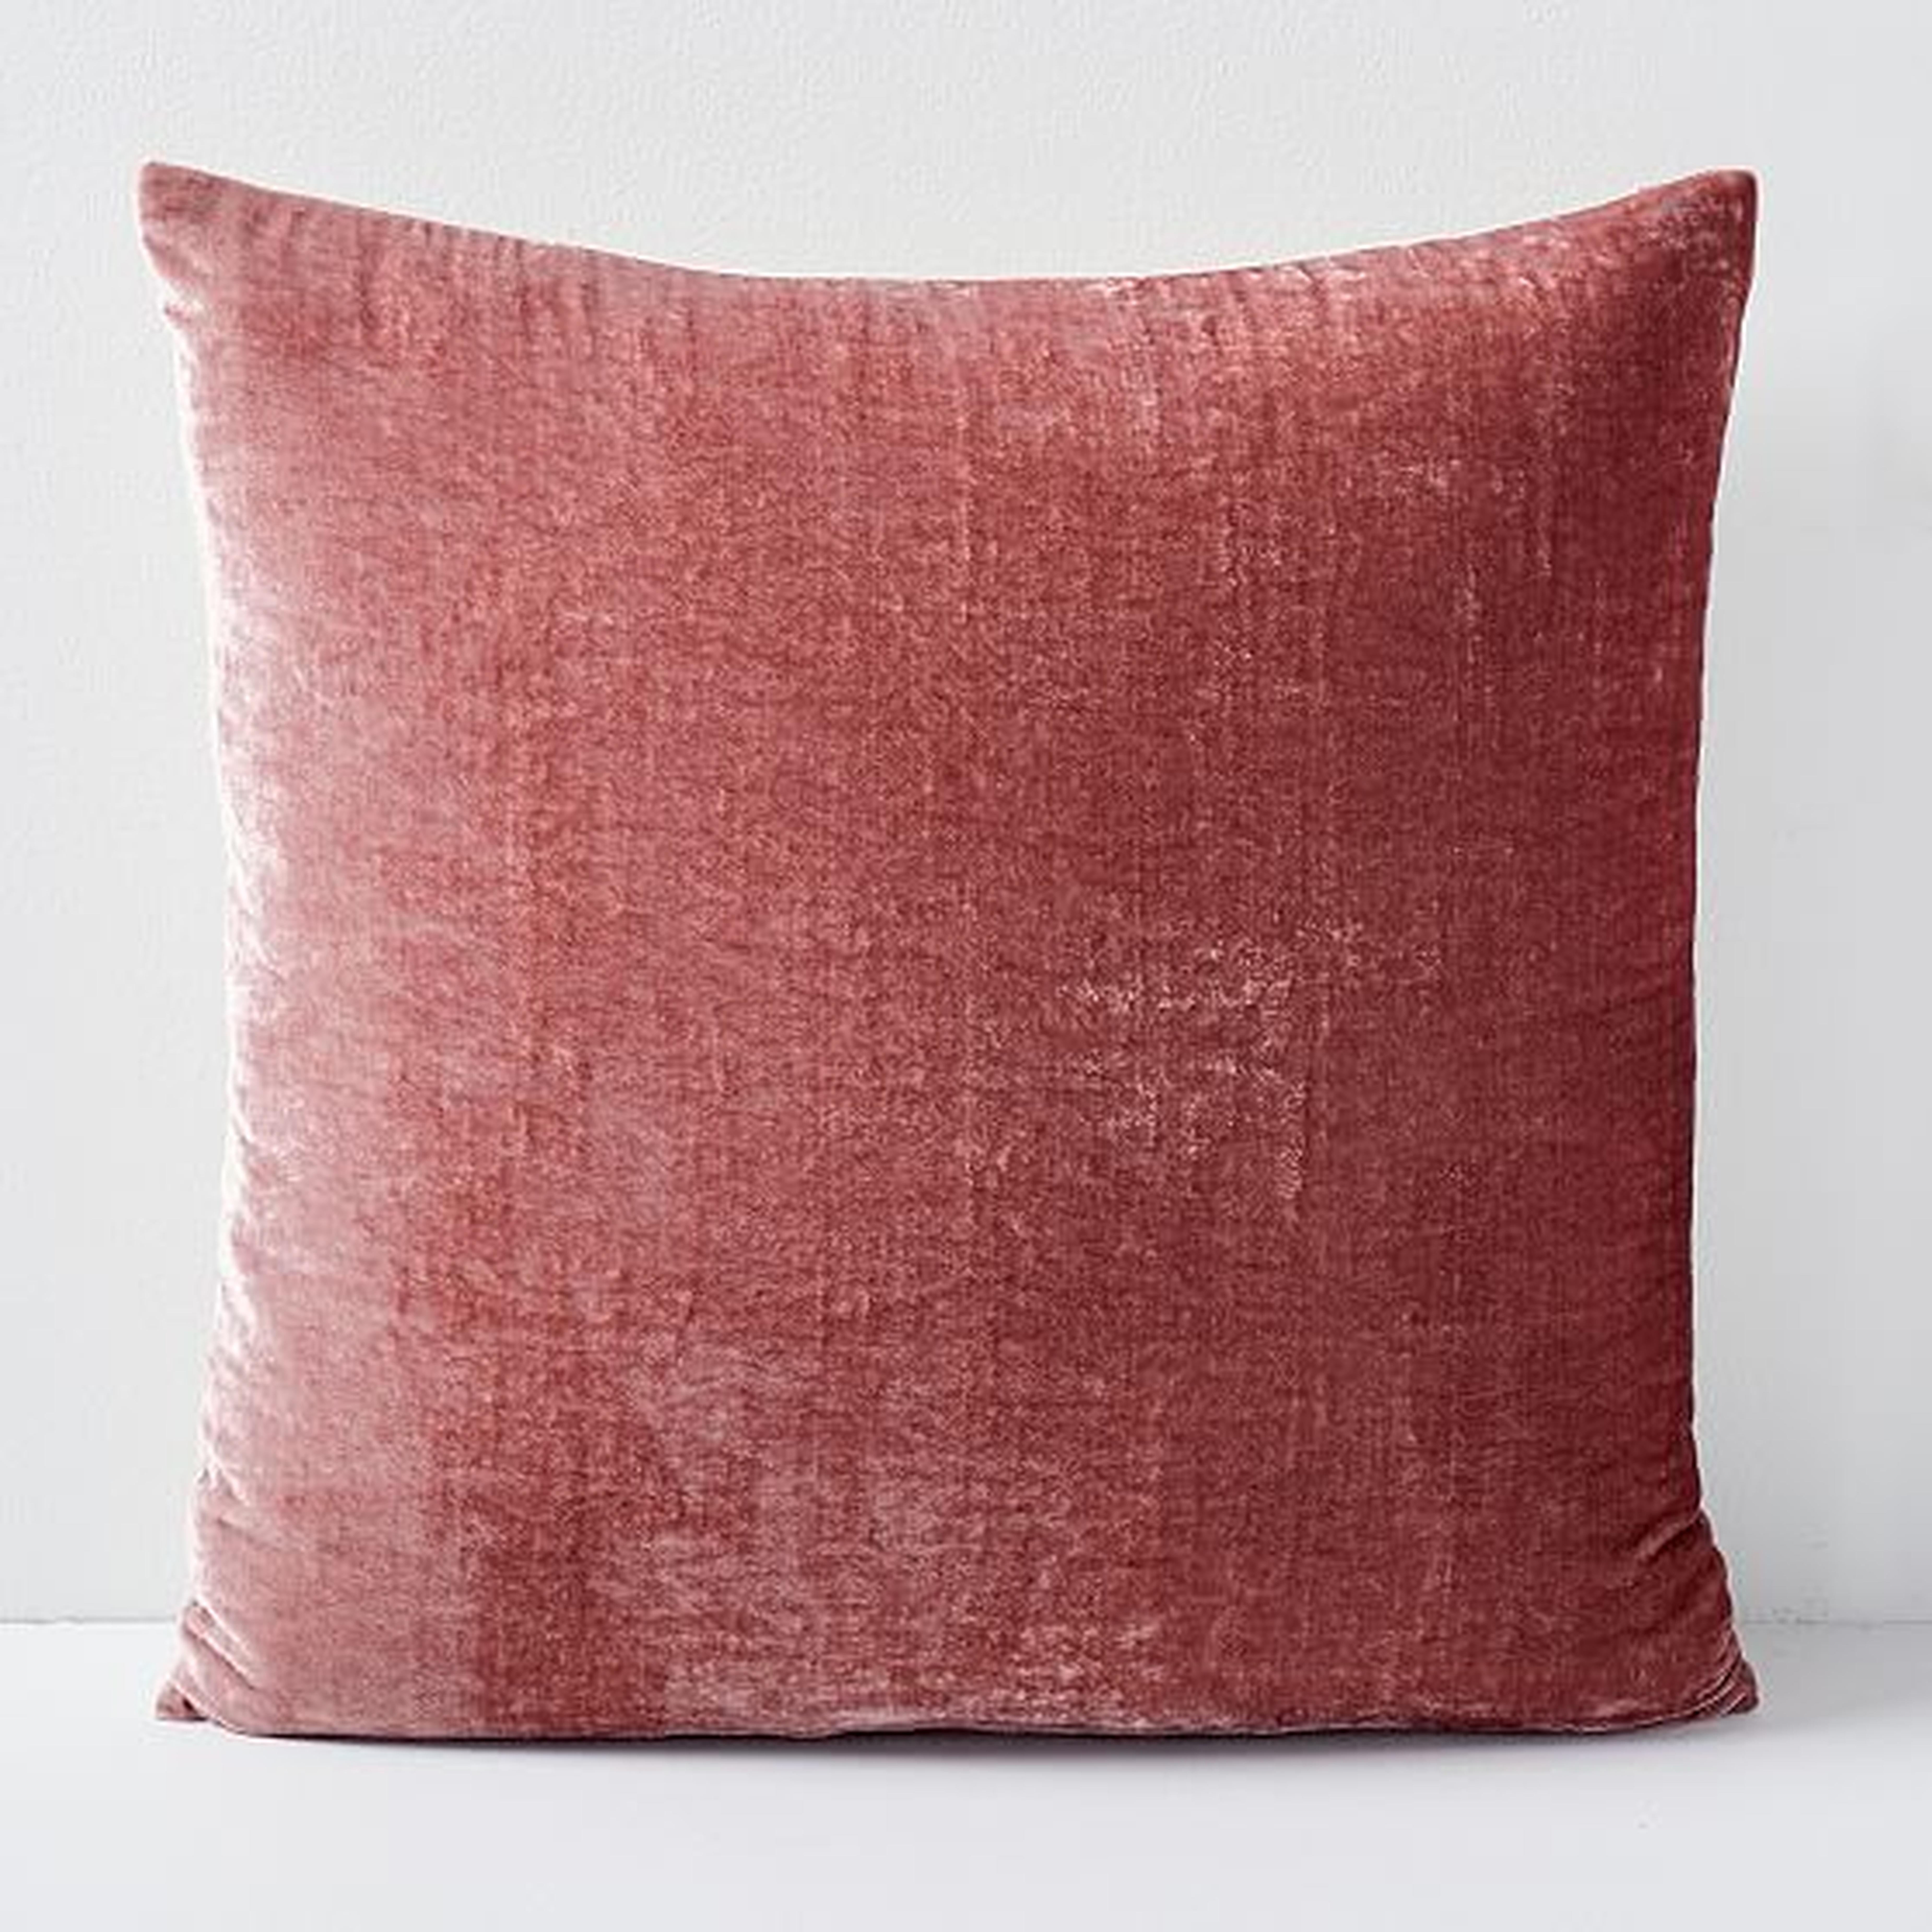 Lush Velvet Pillow Cover, Pink Grapefruit, 20" x 20" - West Elm